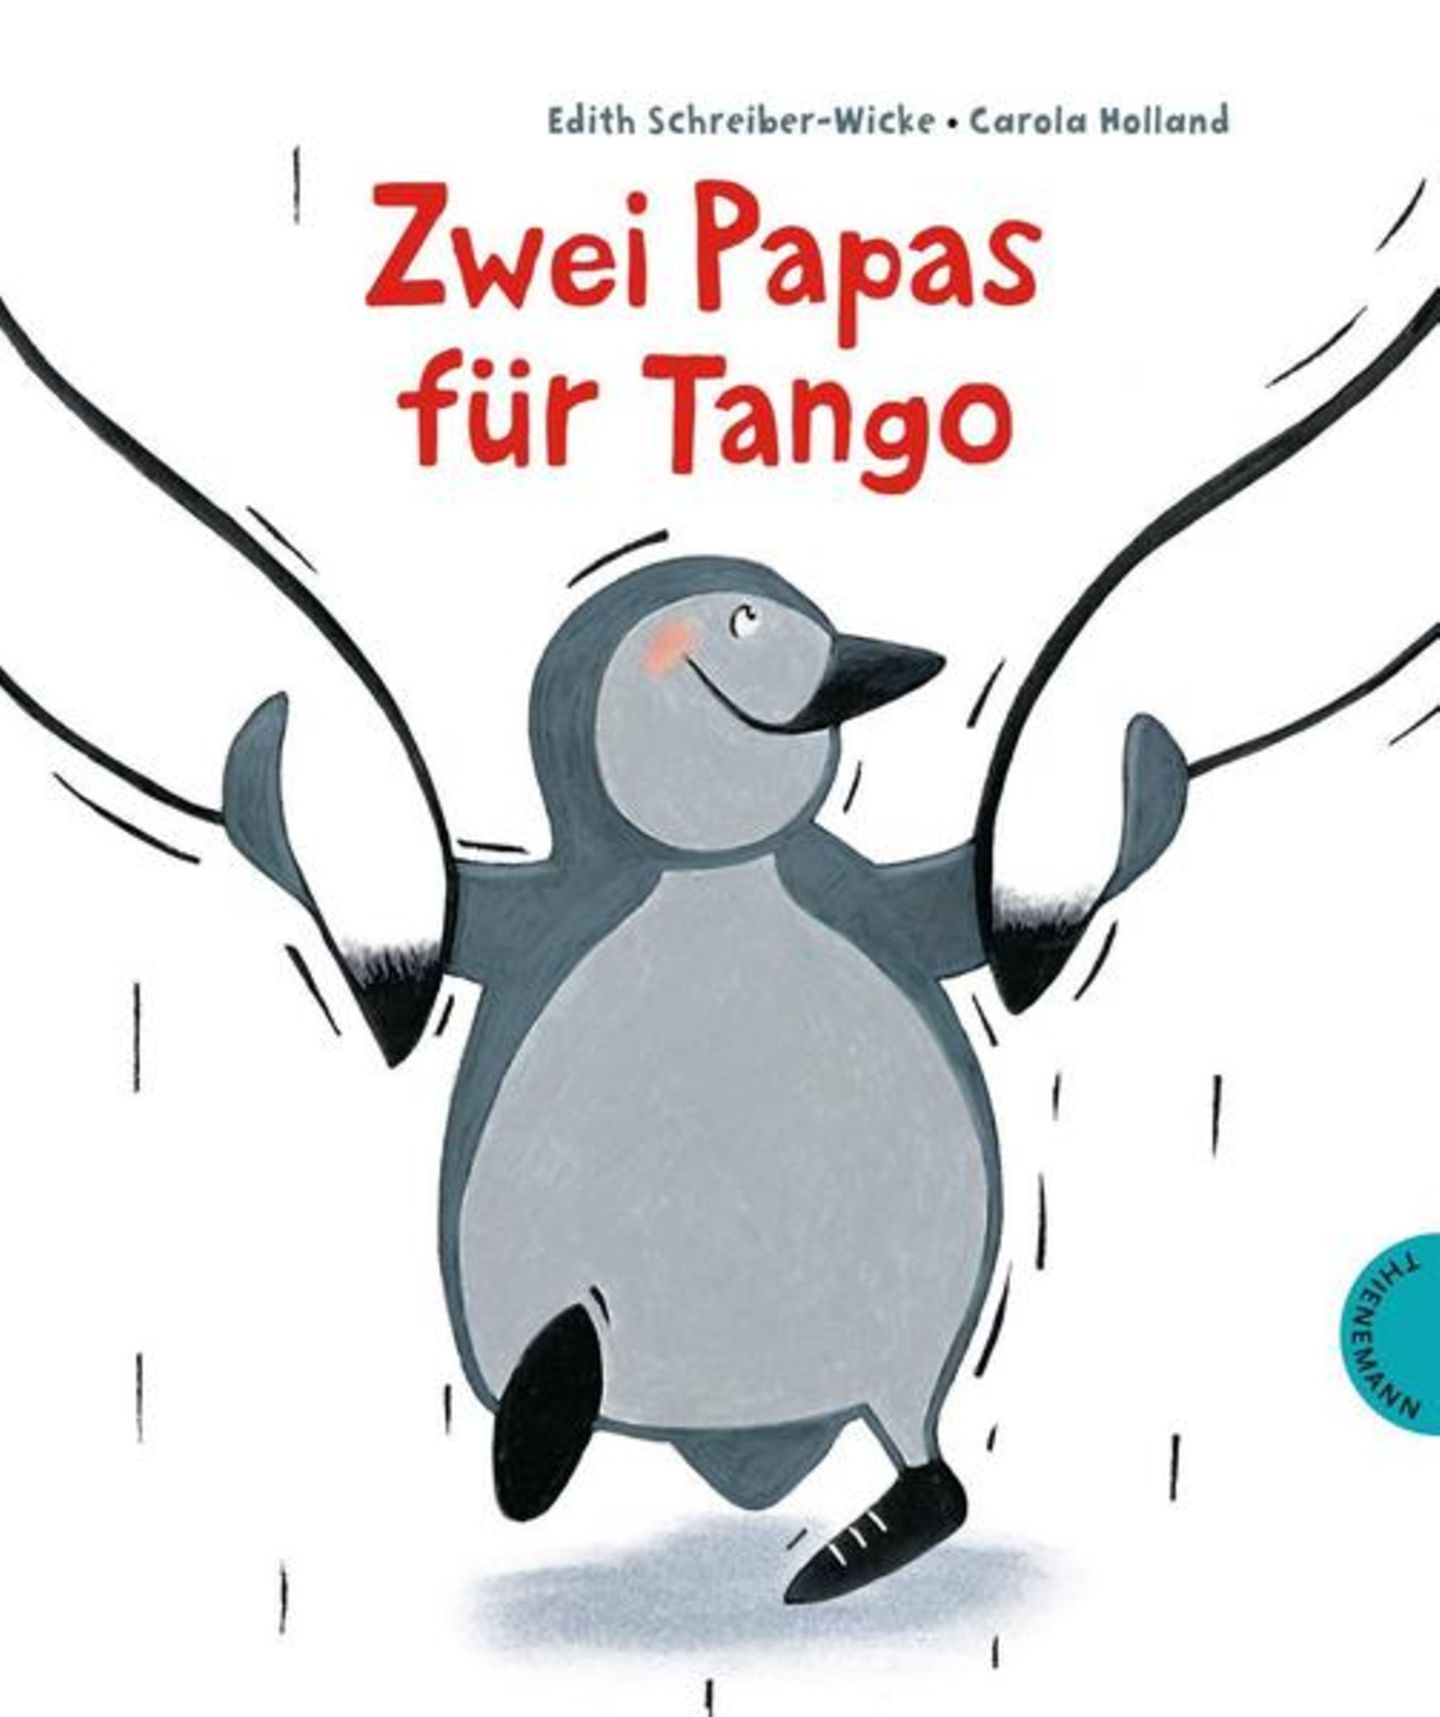 Buch: "Zwei Papas für Tango"